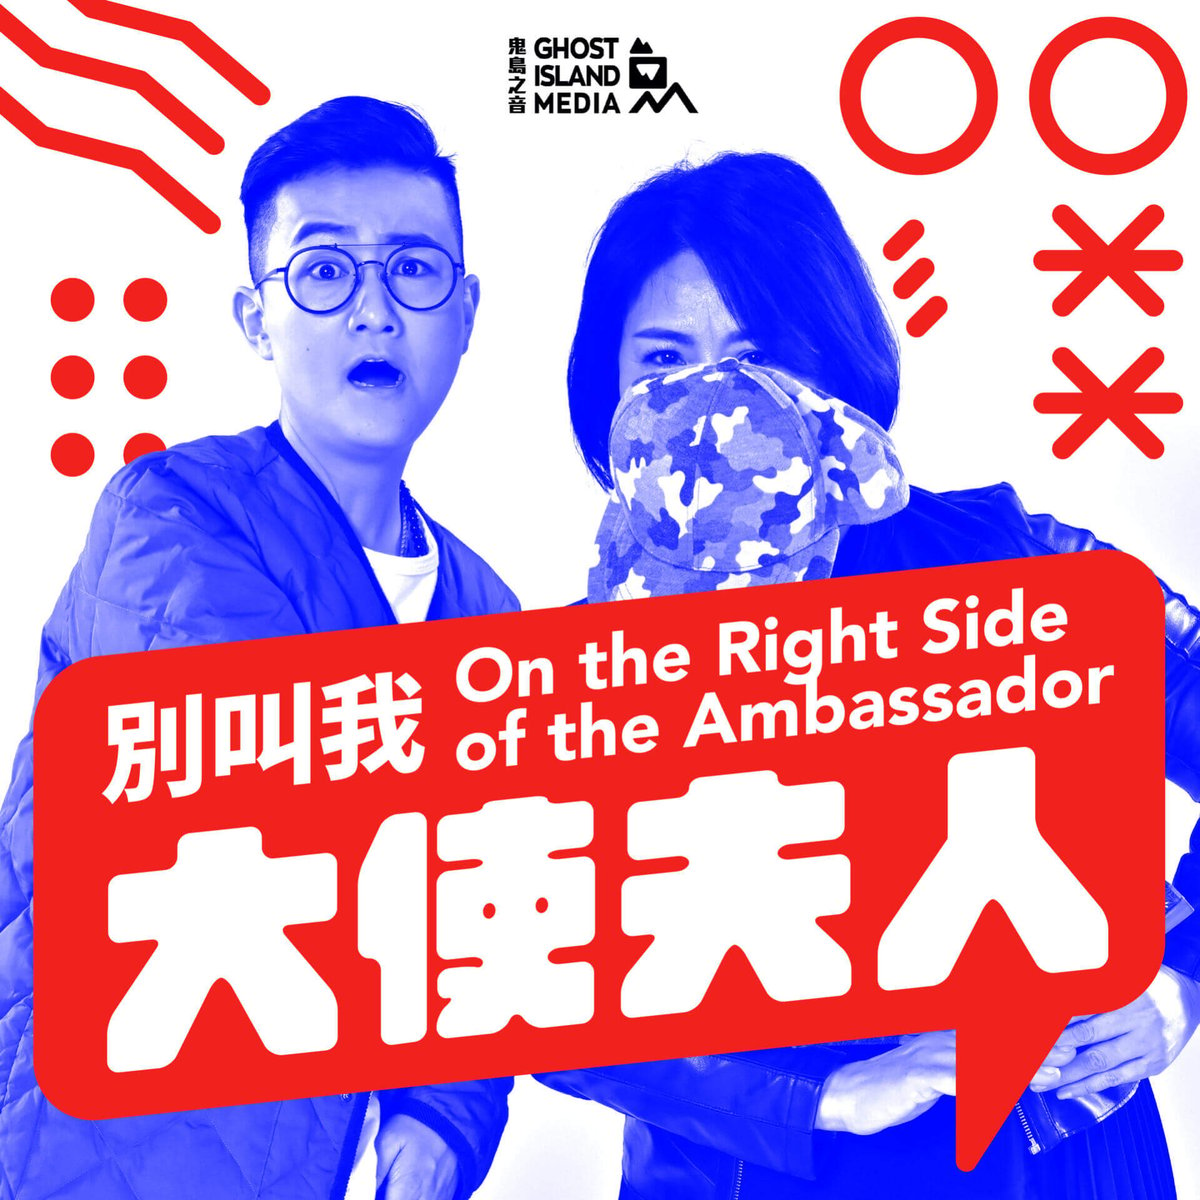 媒體, Taiwan, 台灣, 民主, 平權, 台灣價值, Podcaster, 內容創作, 自媒體, 創業, 鬼島之音, 聲音經濟, 科技職涯, Talent Connect, Podcast